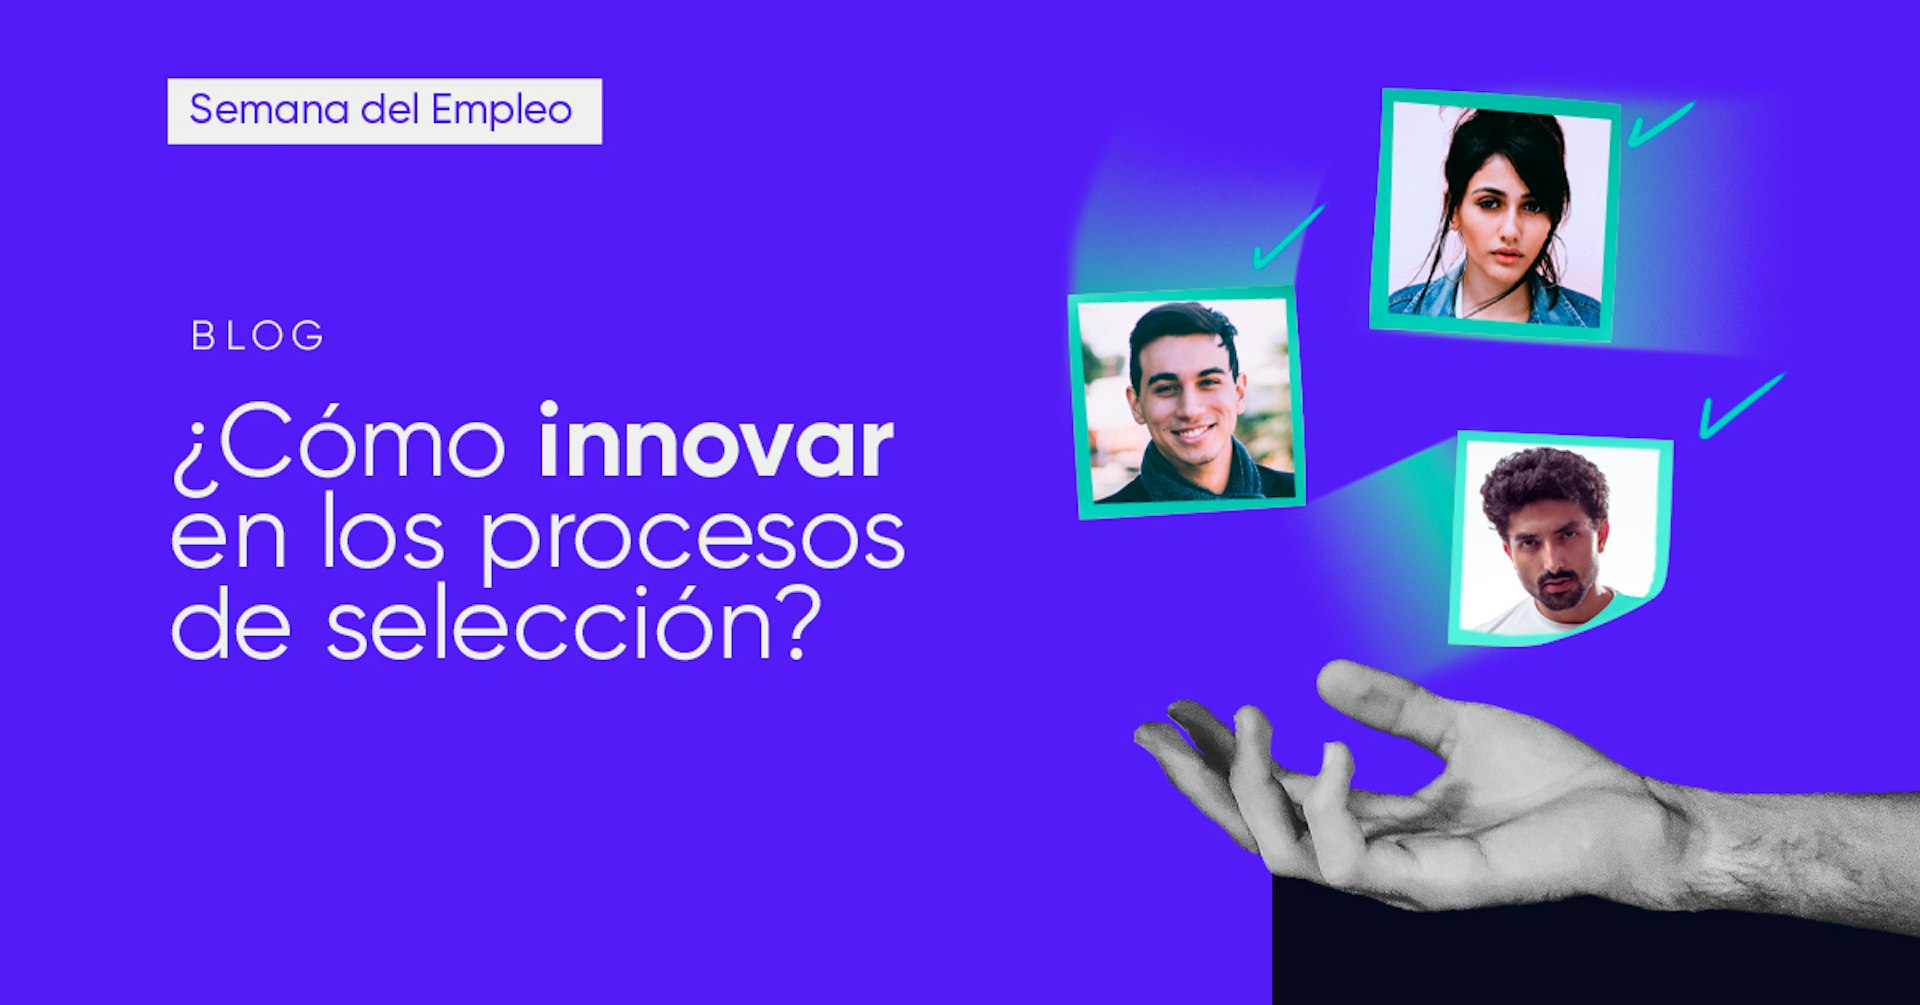 ¿Cómo innovar en los procesos de selección? ¡Realizamos el primer Talent Sprint de Latinoamérica!